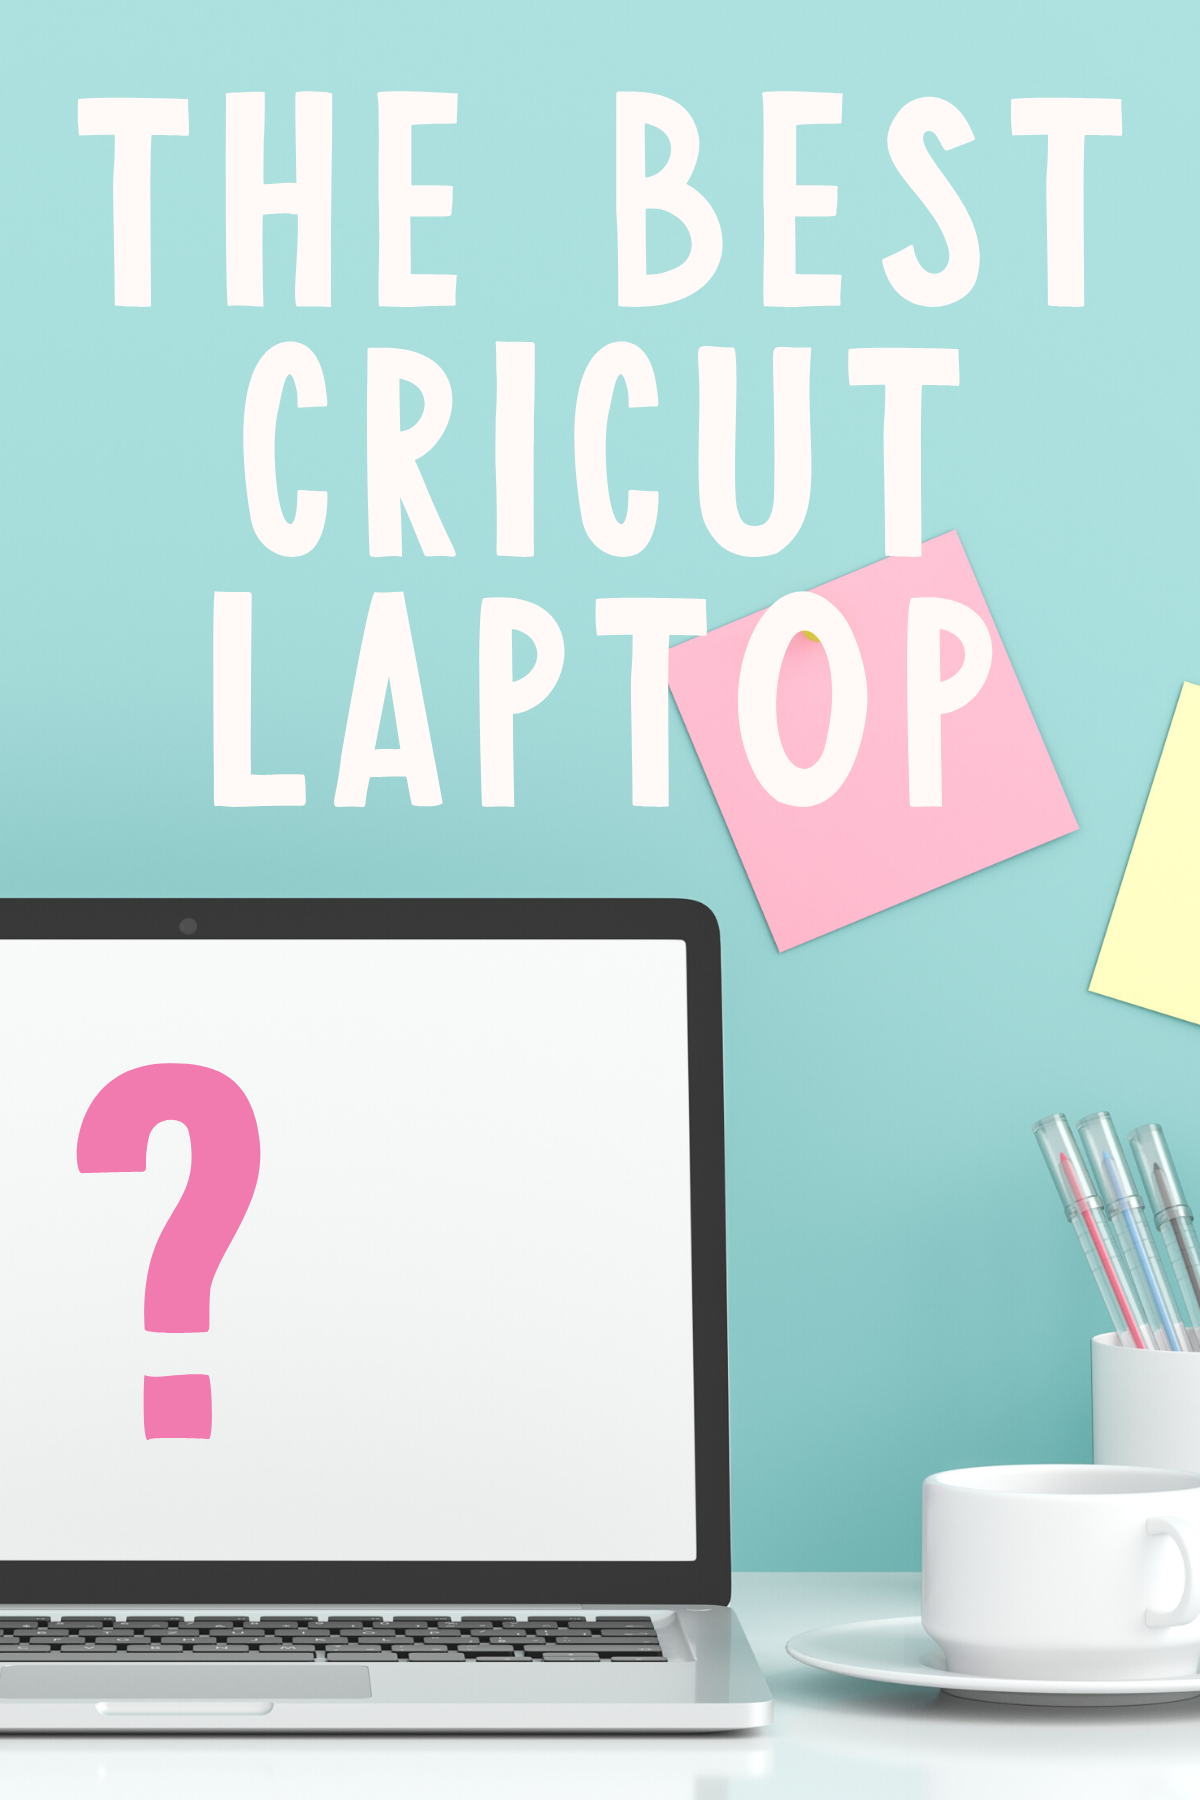 Do You Need a Laptop for a Cricut?